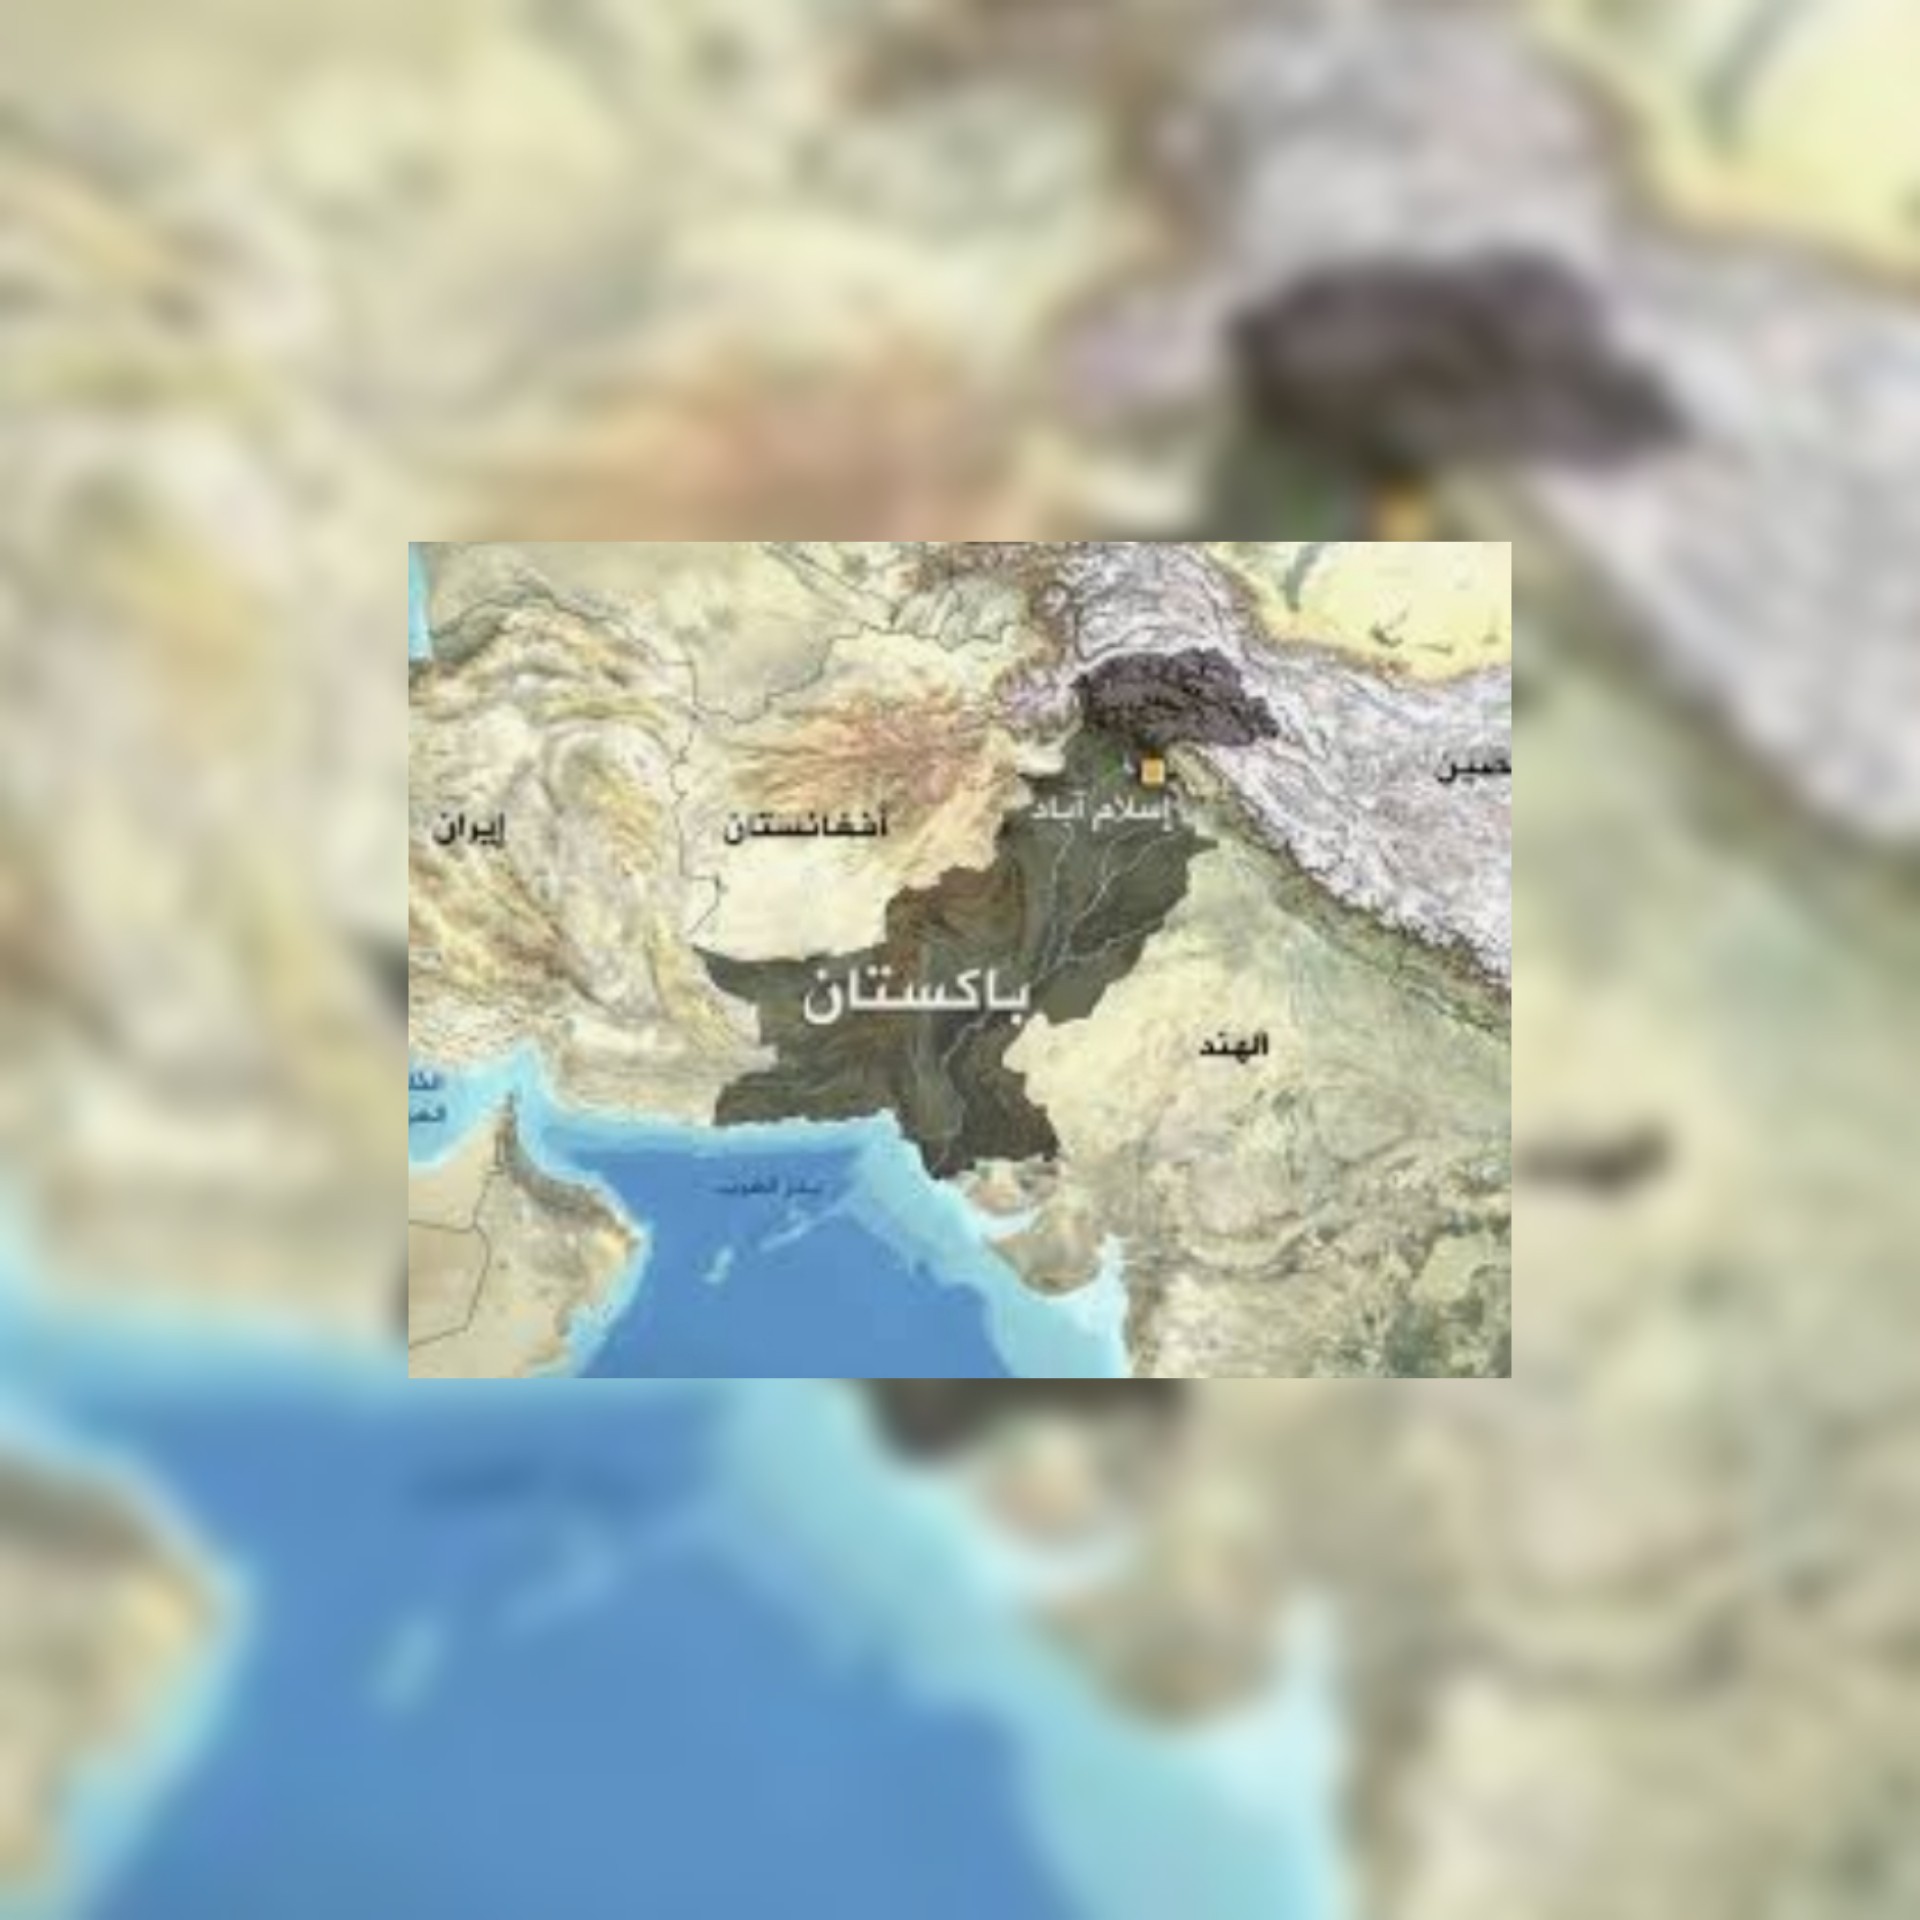 بالفيديو / إقليم بلوشستان جنوب باكستان : زلزال دموي يخلّف 20 قتيلاً على الأقل وأكثر من 200 جريح